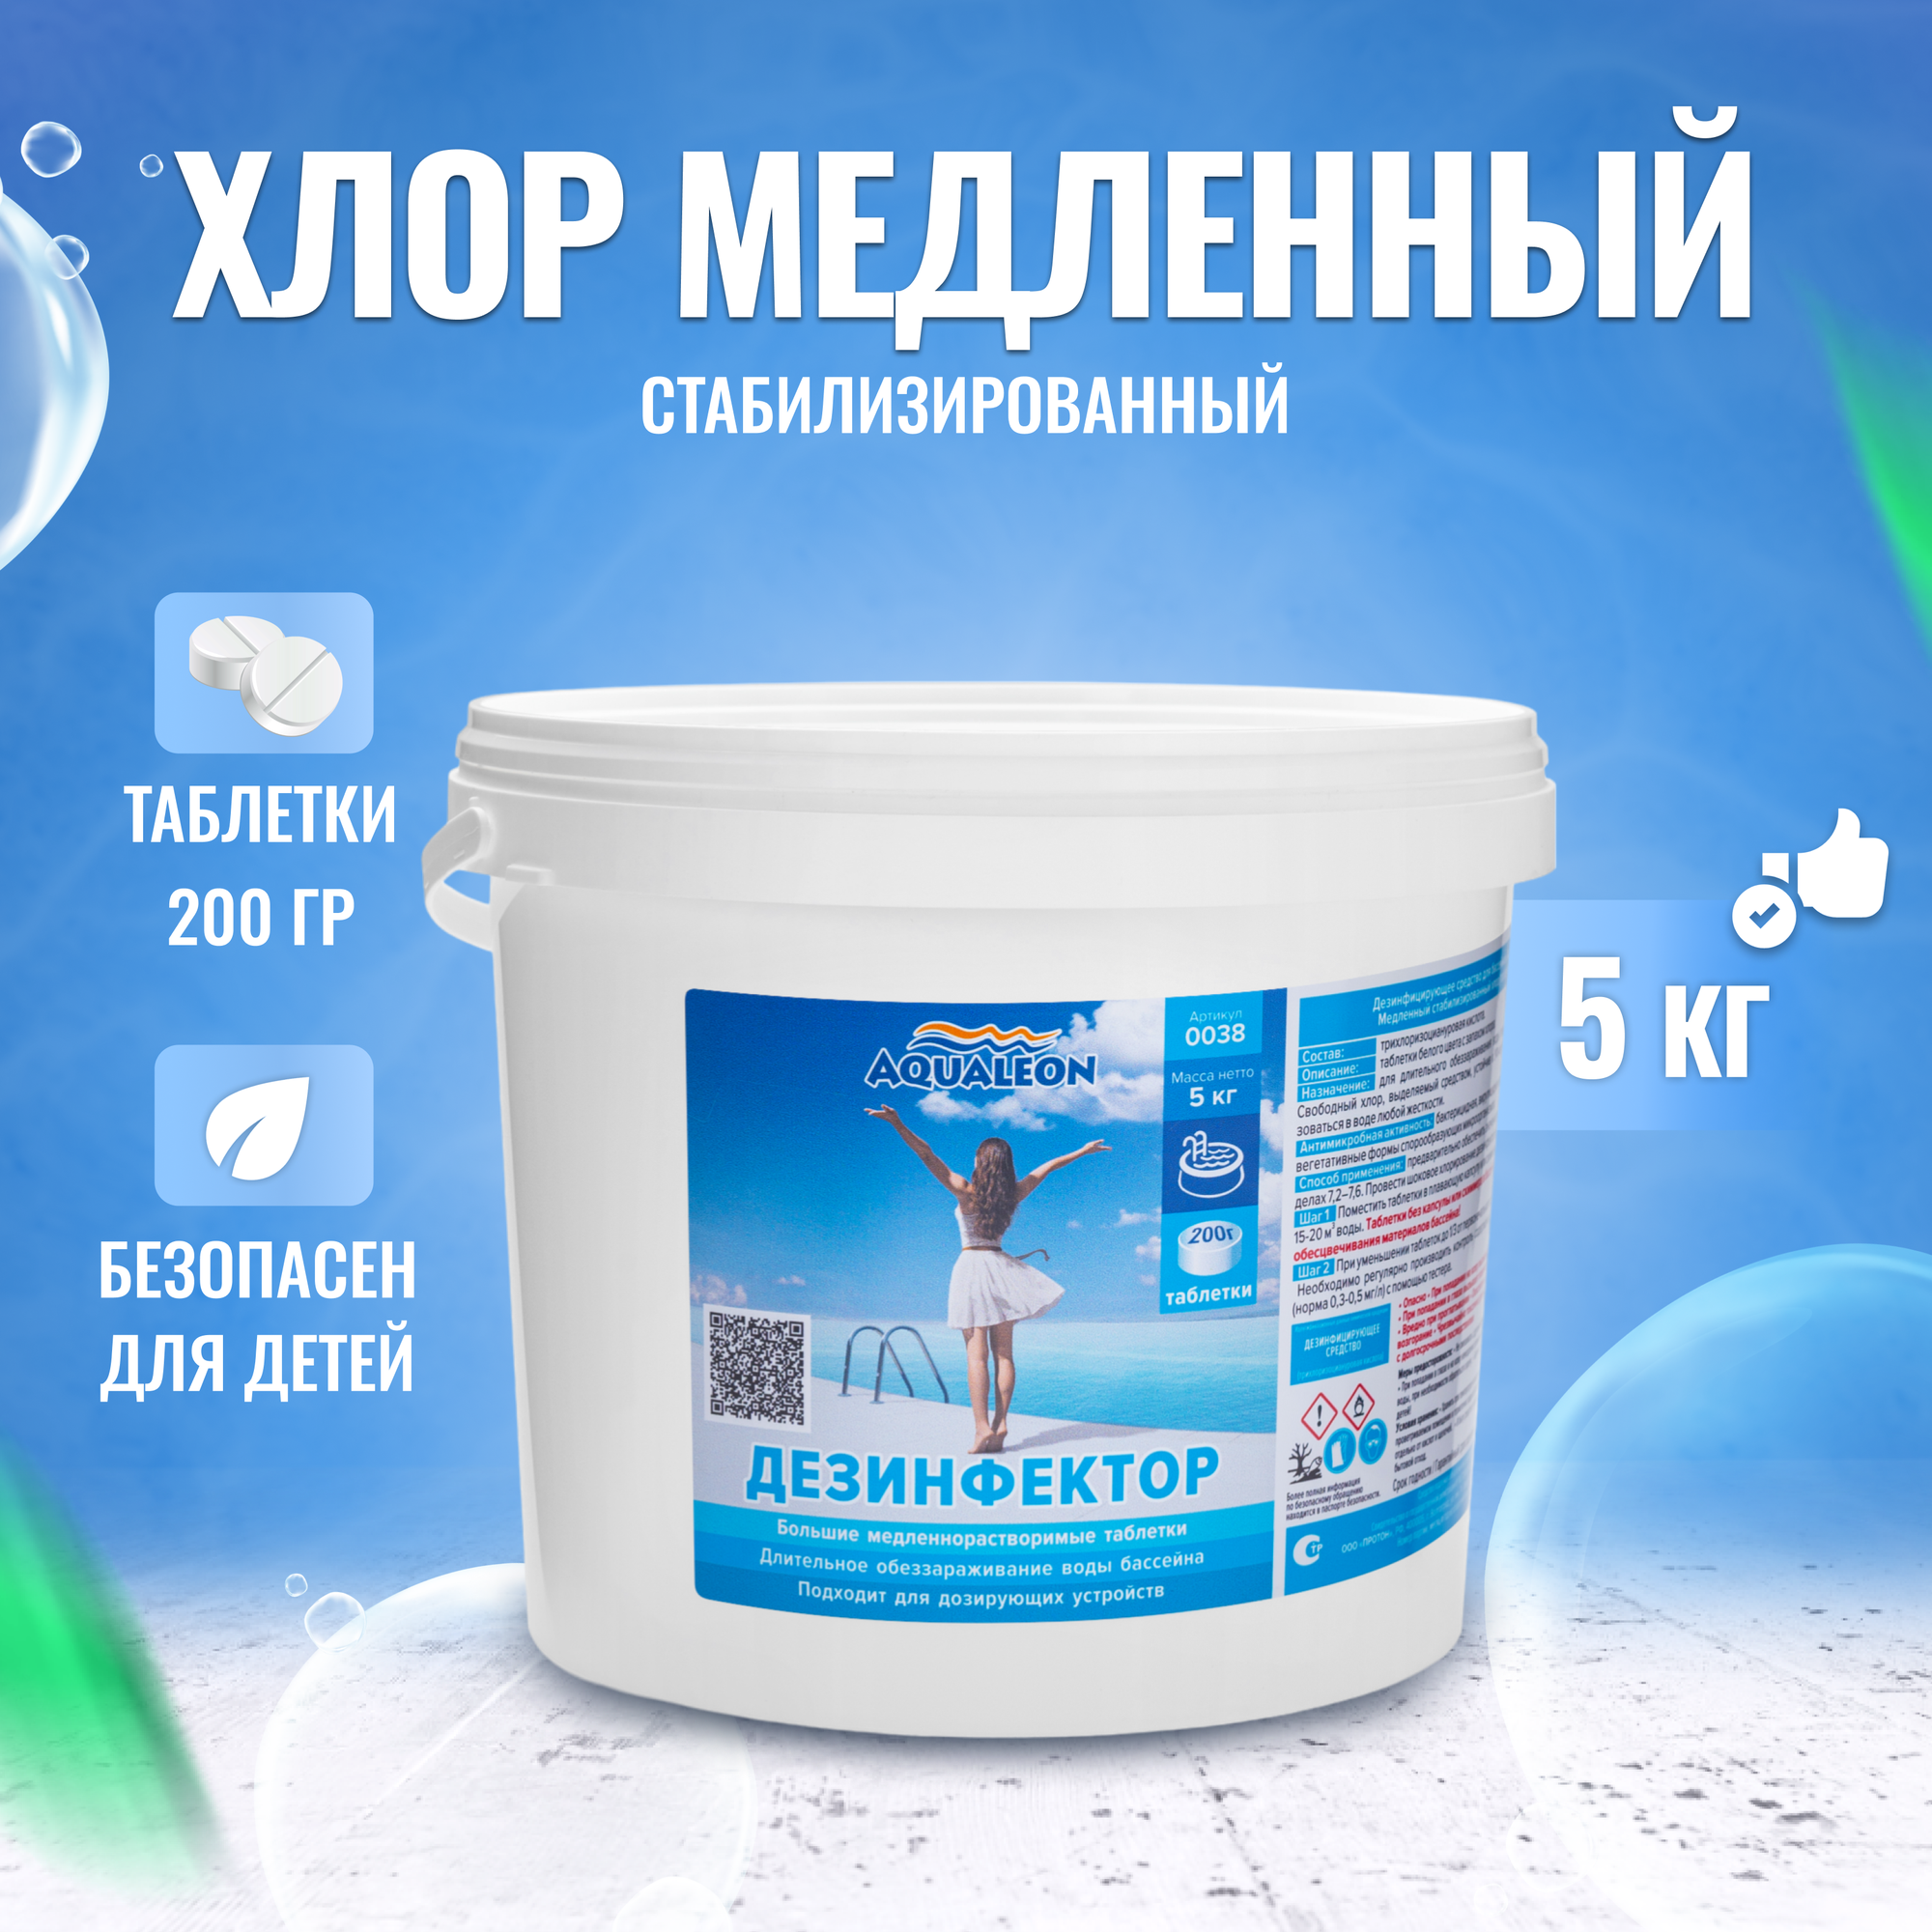 Дезинфектор МСХ Aqualeon (медленный стабилизированный хлор) в таблетках 200 гр, 5 кг